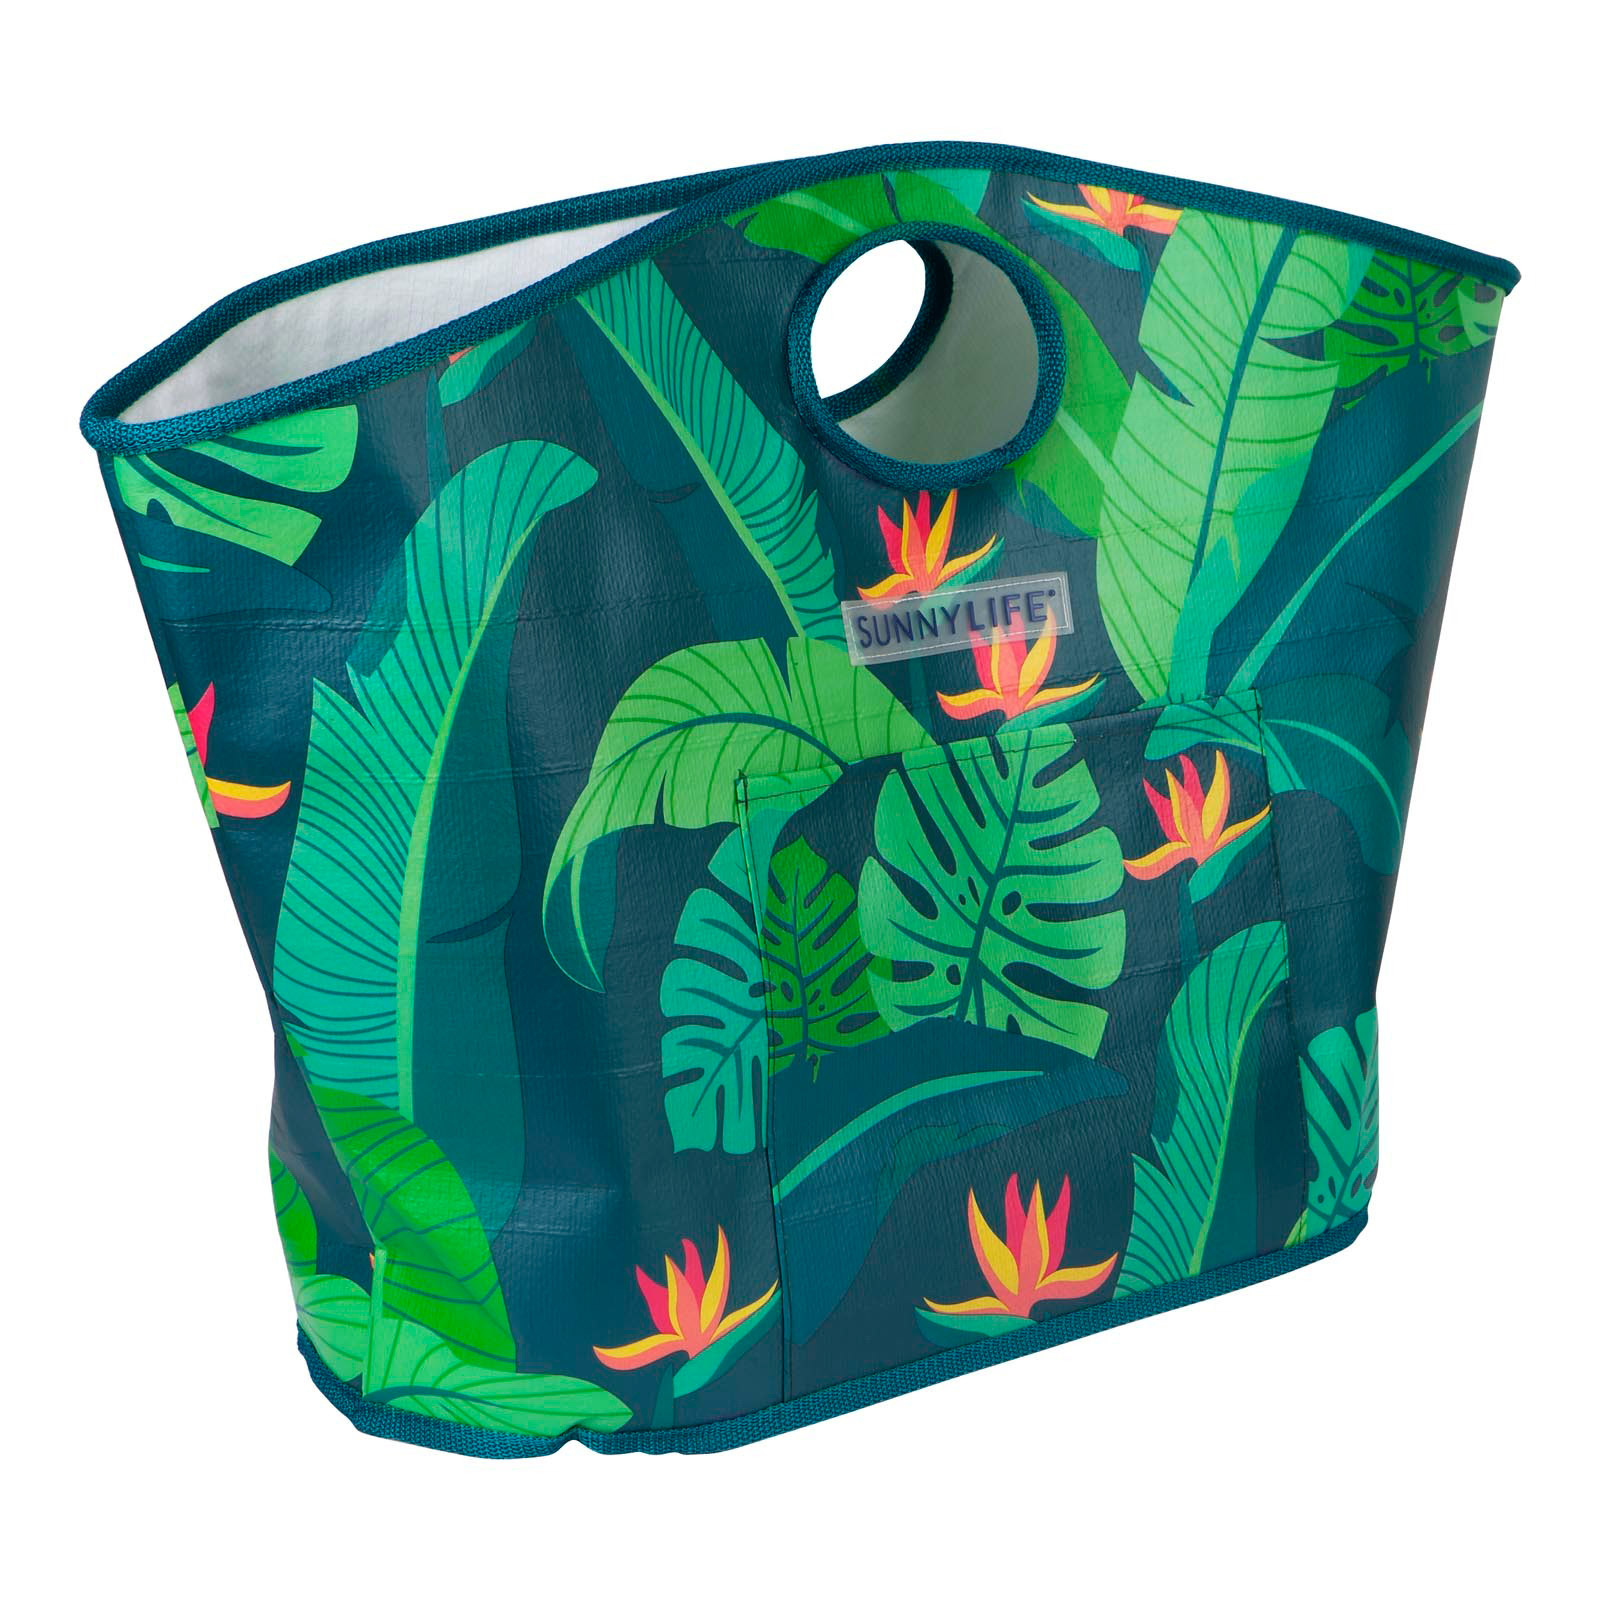 ビーチバッグ 緑のリーフ柄が入った丈夫なトートビーチバッグ - Carryall Bag Monteverde